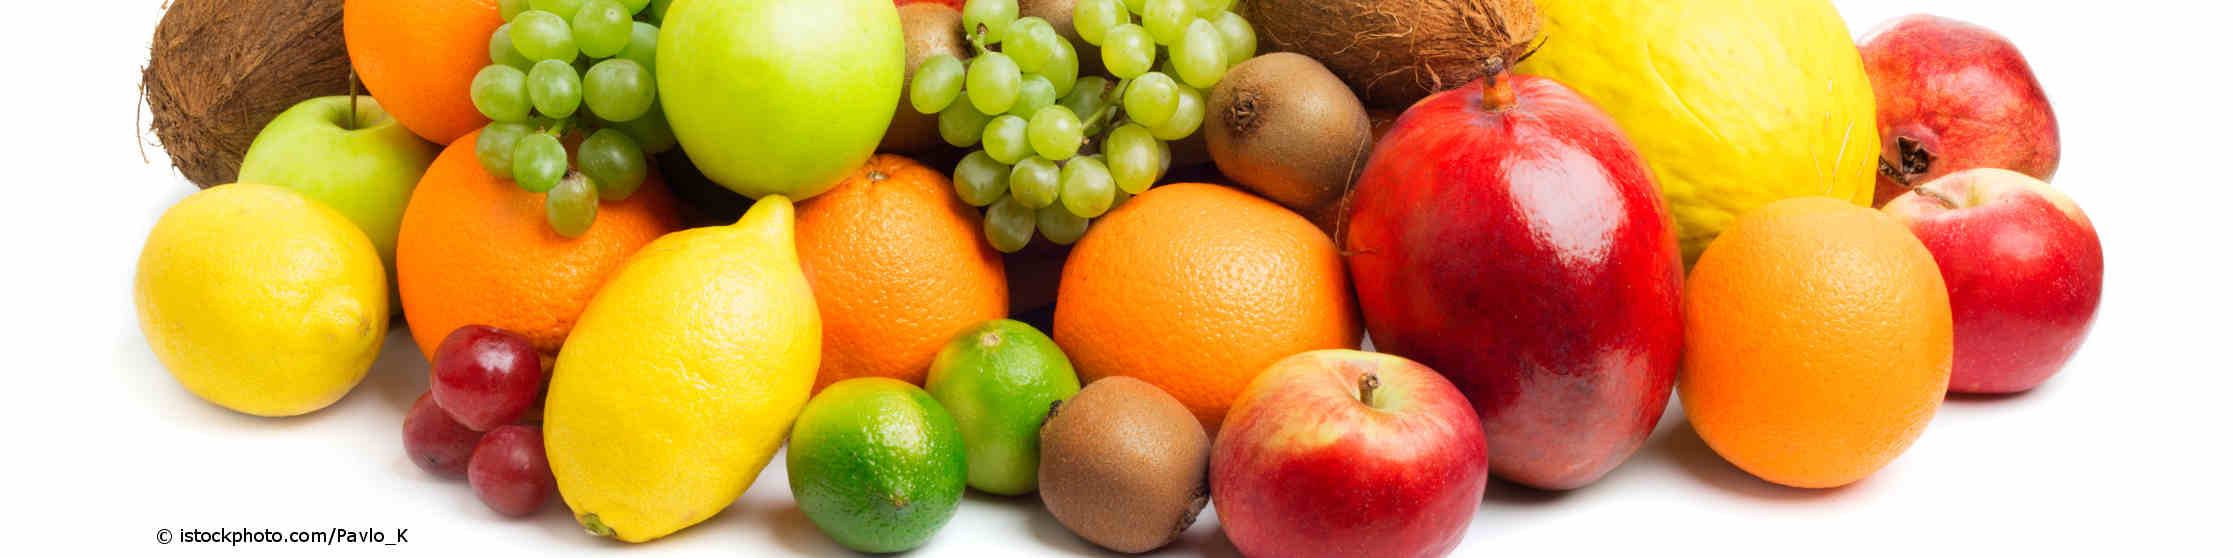 Zitronen, Limetten, Kiwi, Trauben, Äpfel und Apfelsinen stecken voller Vitamine.